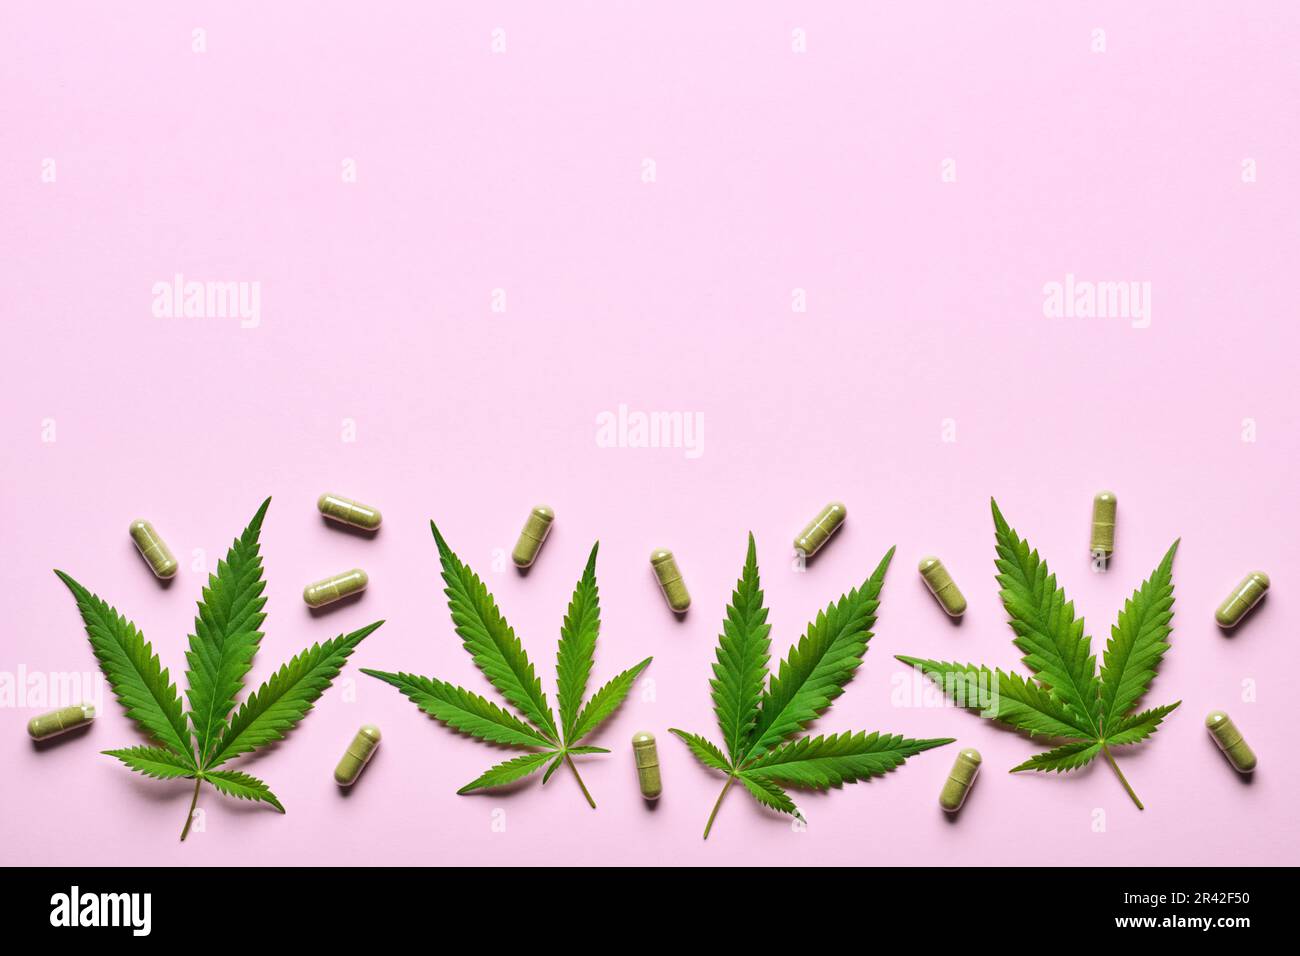 Cannabisextrakt-Kapseln und Hanfblätter mit rosafarbenem Hintergrund. Beruhigungs-, Anti-Stress- und Schlafkonzept Stockfoto